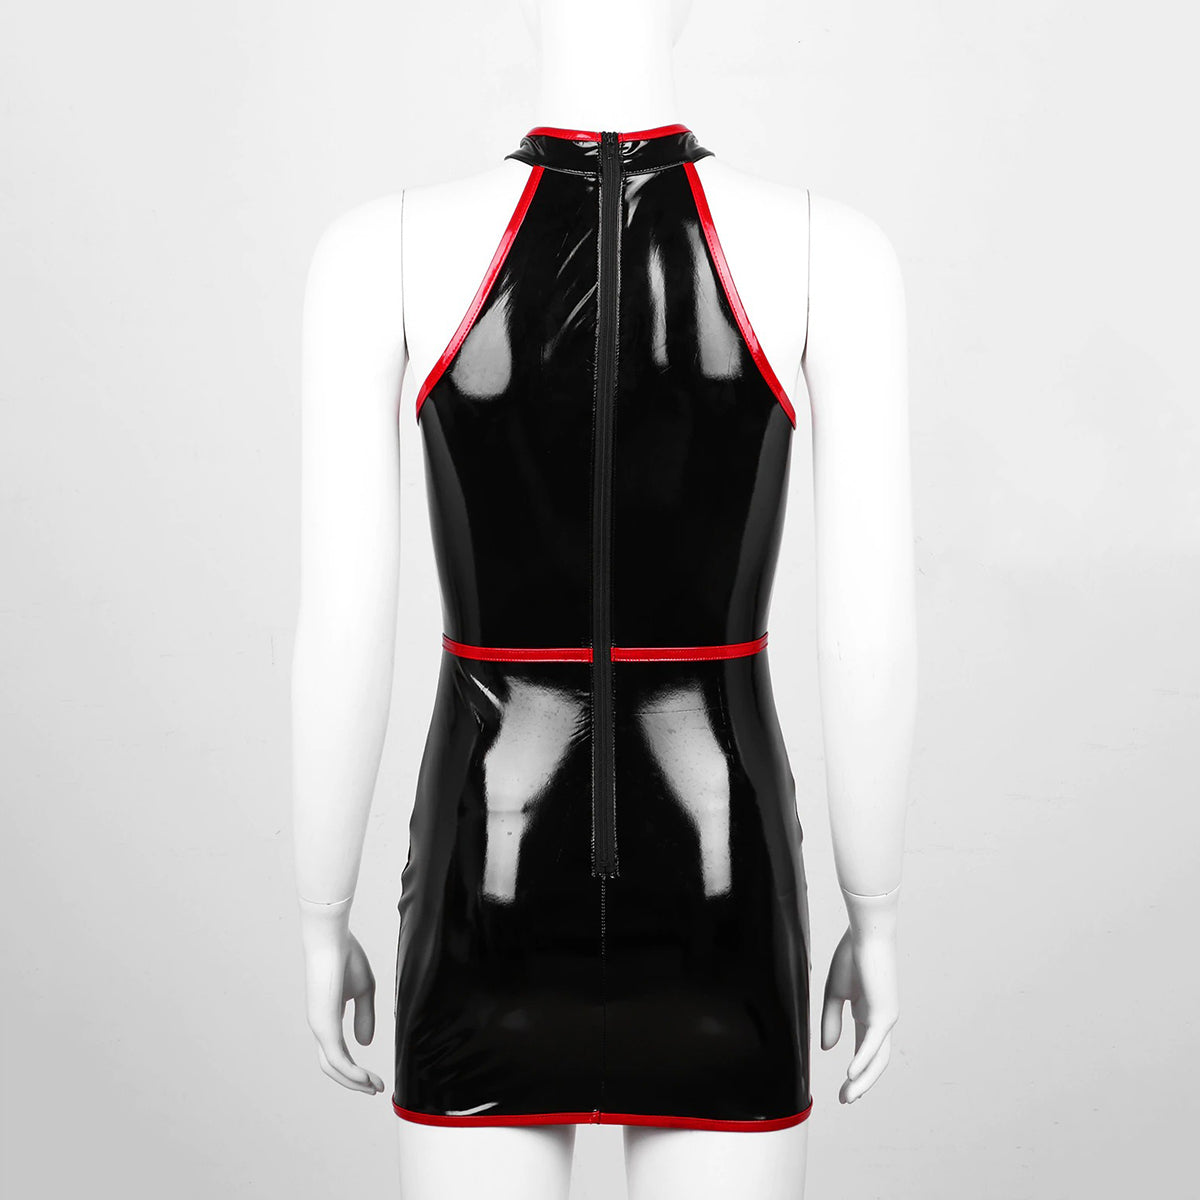 Slim Fit Bodycon Dress for Pole Dance / Women's Wetlook Sleeveless Dress in Alternative Apparel - HARD'N'HEAVY